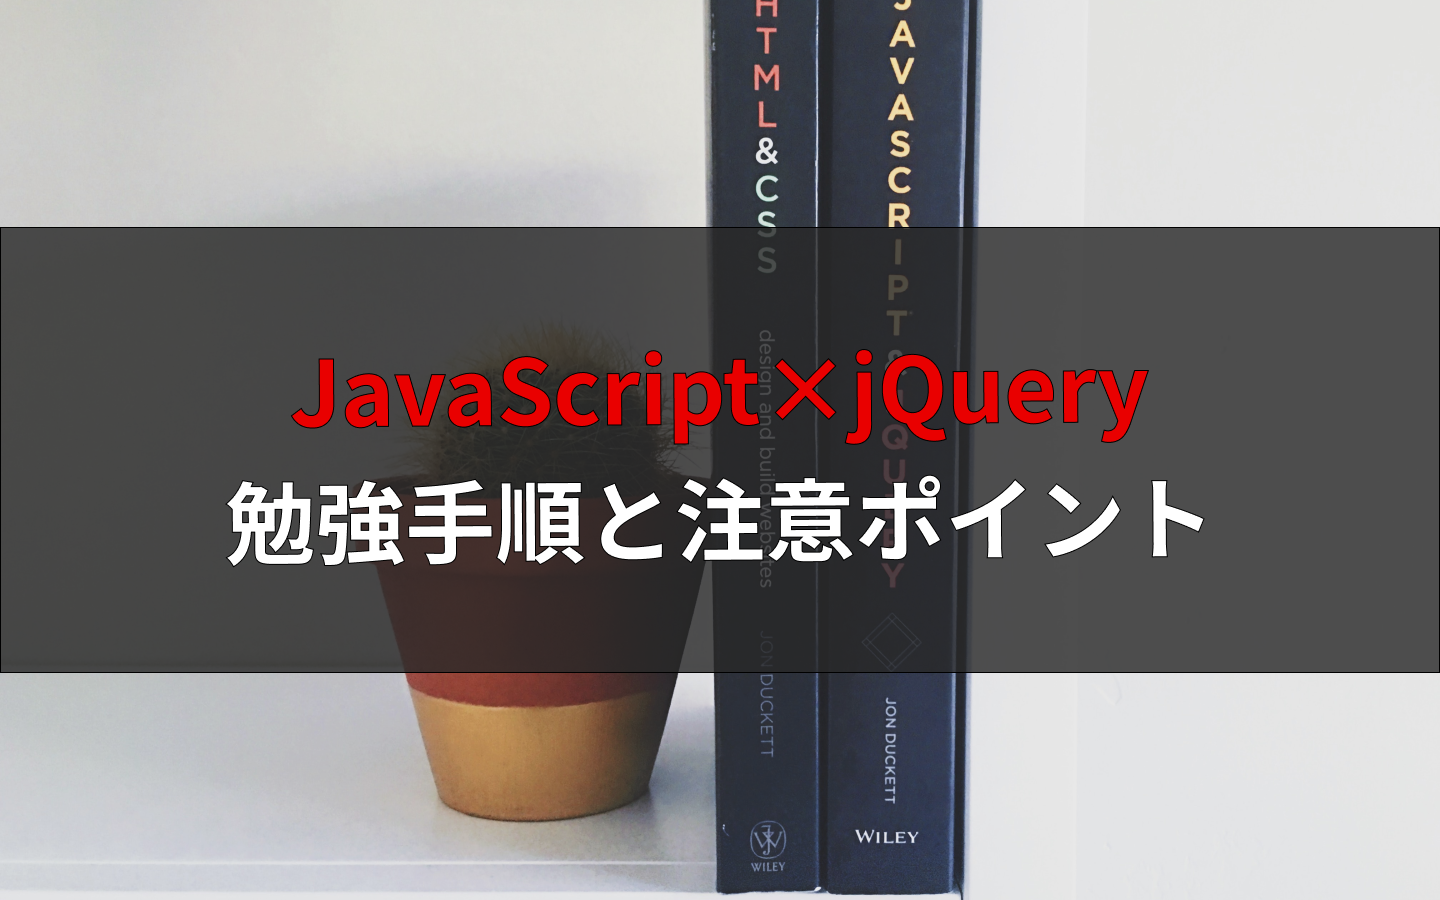 Javascriptとjqueryを勉強するときの注意ポイント2つと学習手順を解説 えんじにゃーブログ